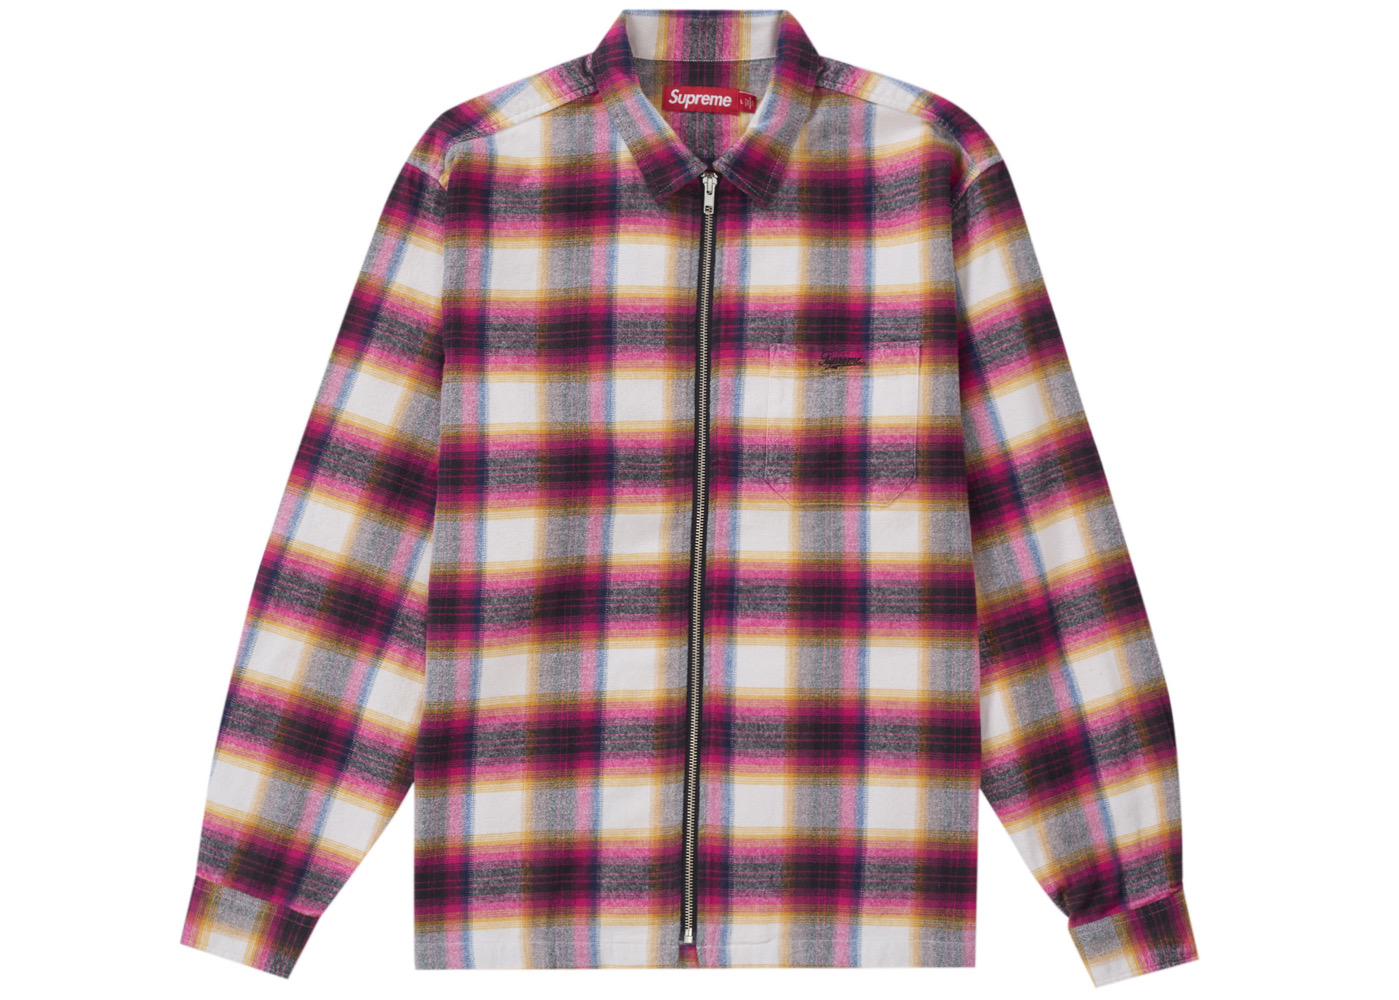 シュプリームShadow Plaid Flannel Zip Up Shirt23000円で購入可能です